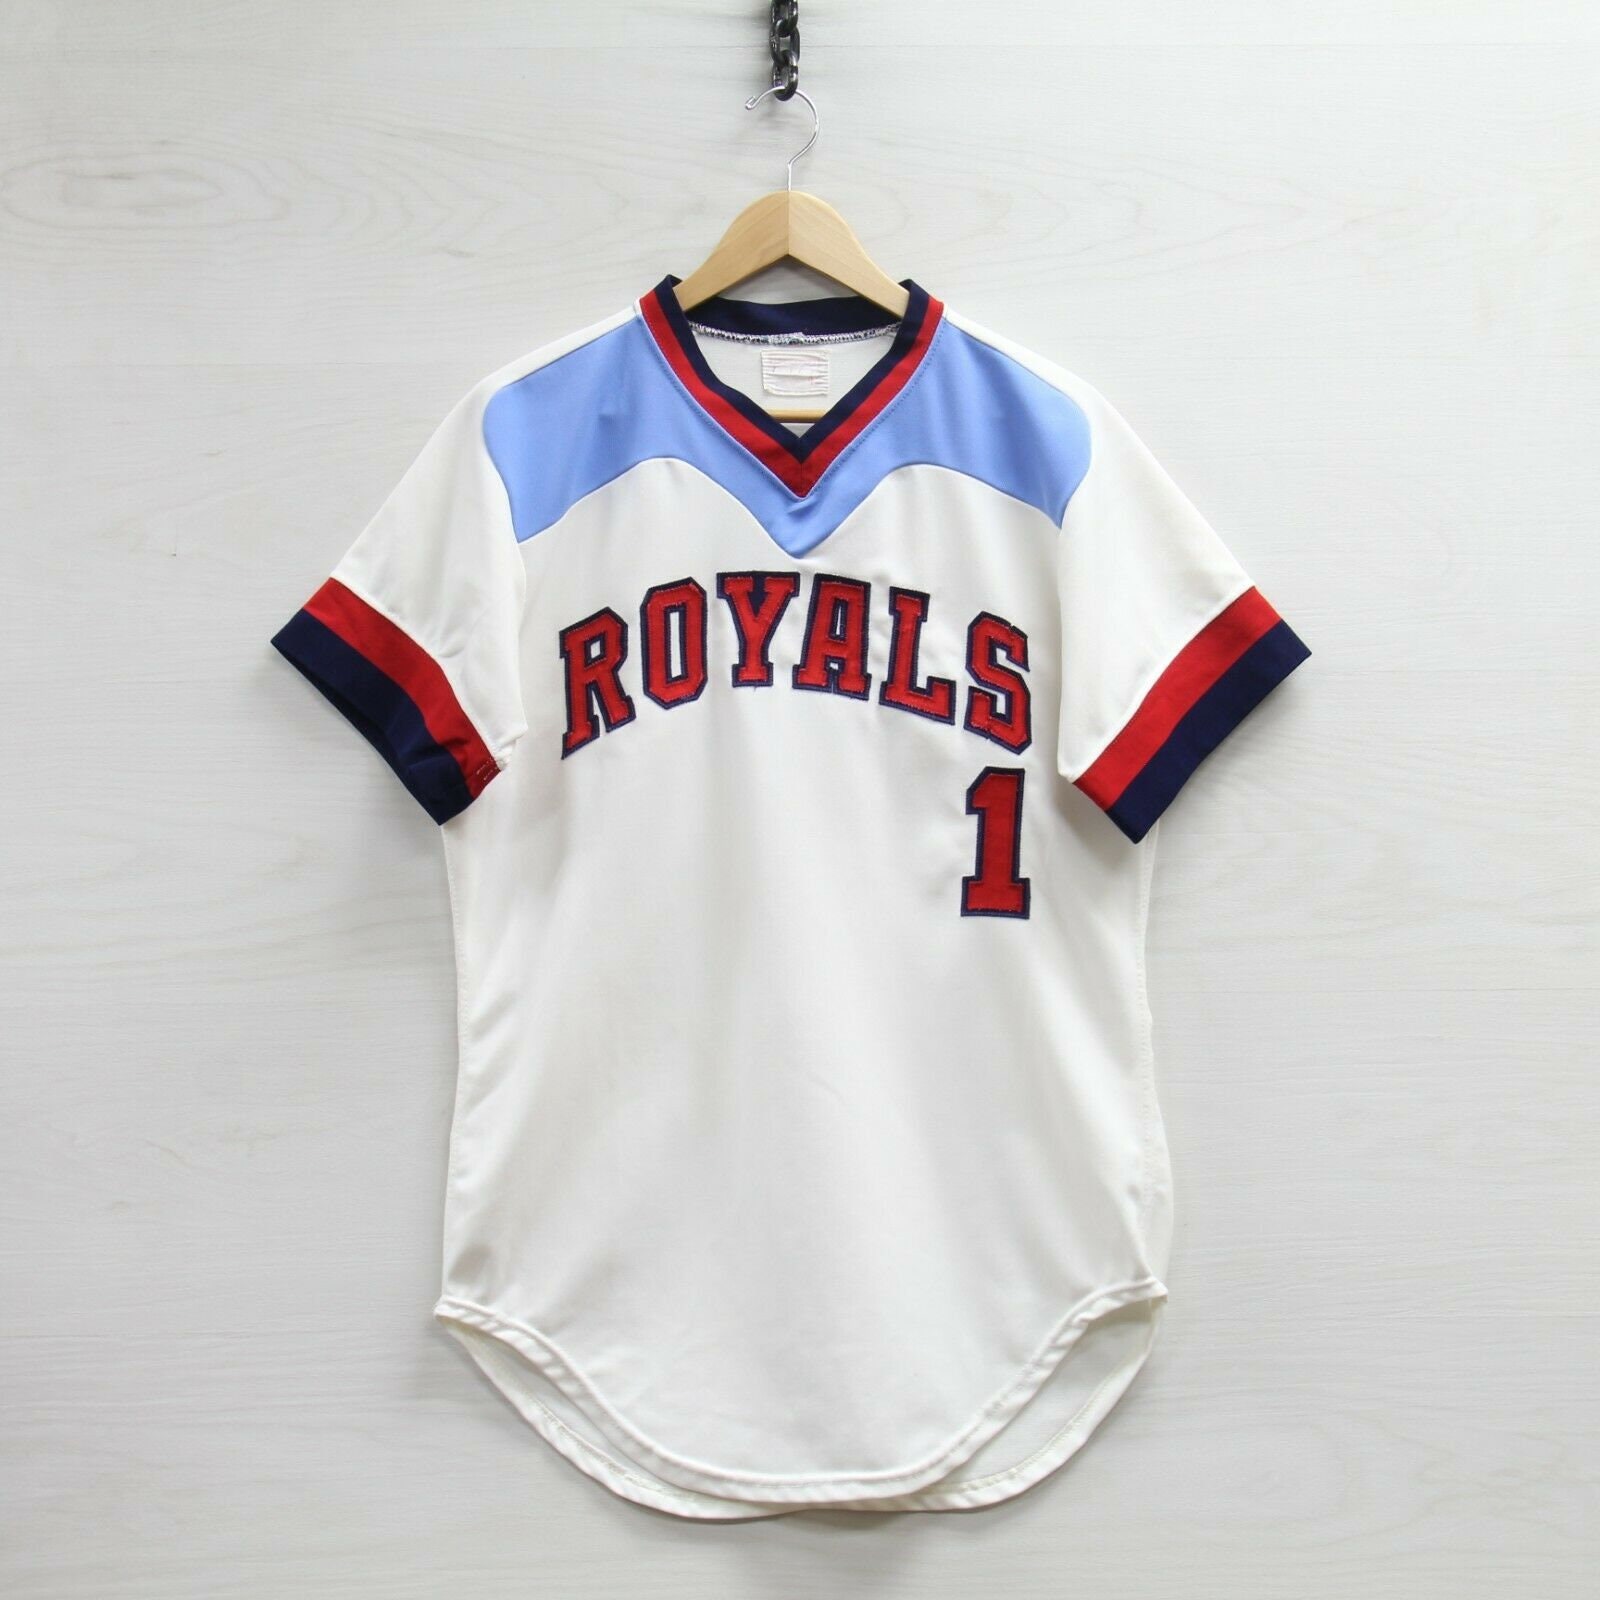 old royals jerseys